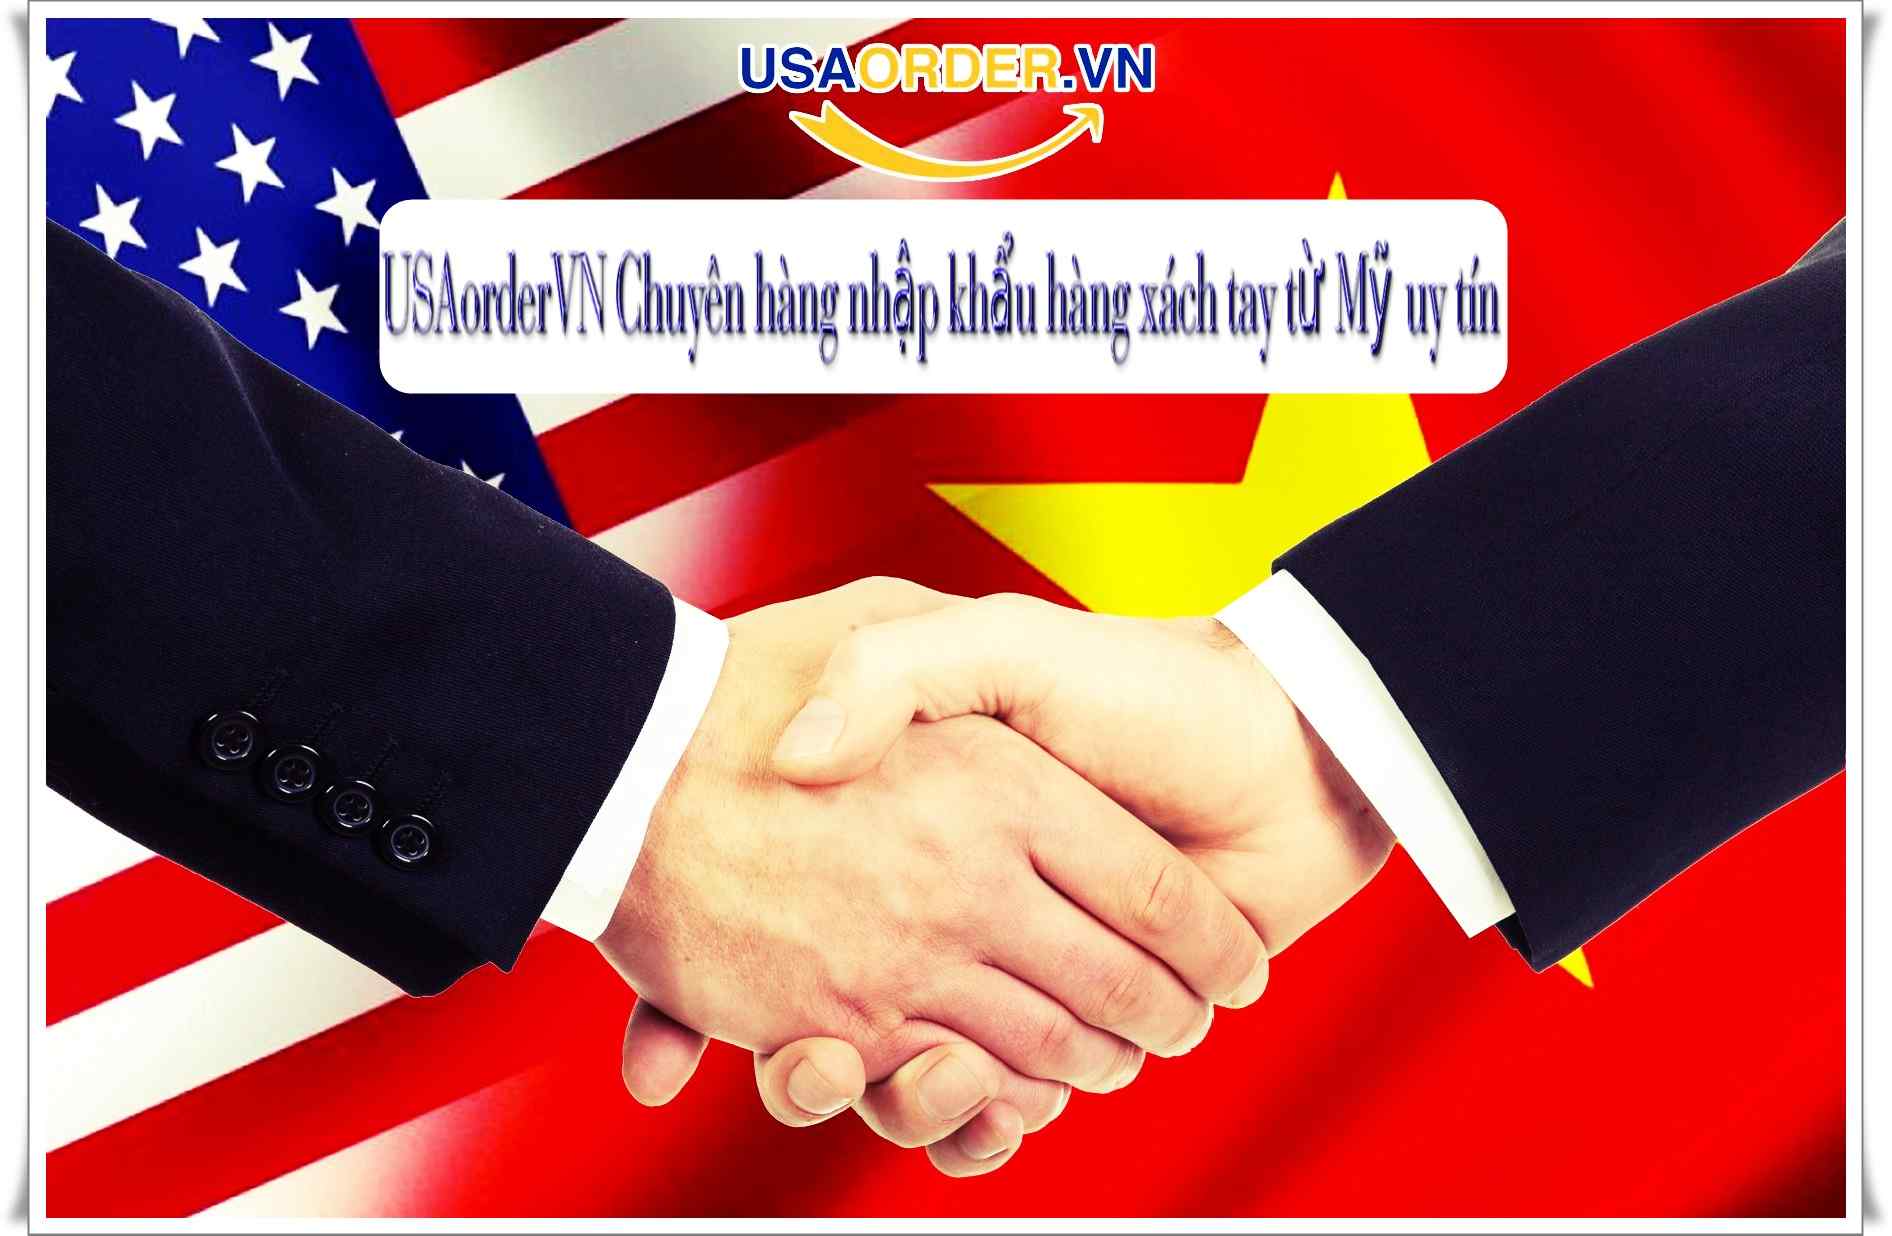 USAorderVN Chuyên hàng nhập khẩu hàng xách tay từ Mỹ uy tín